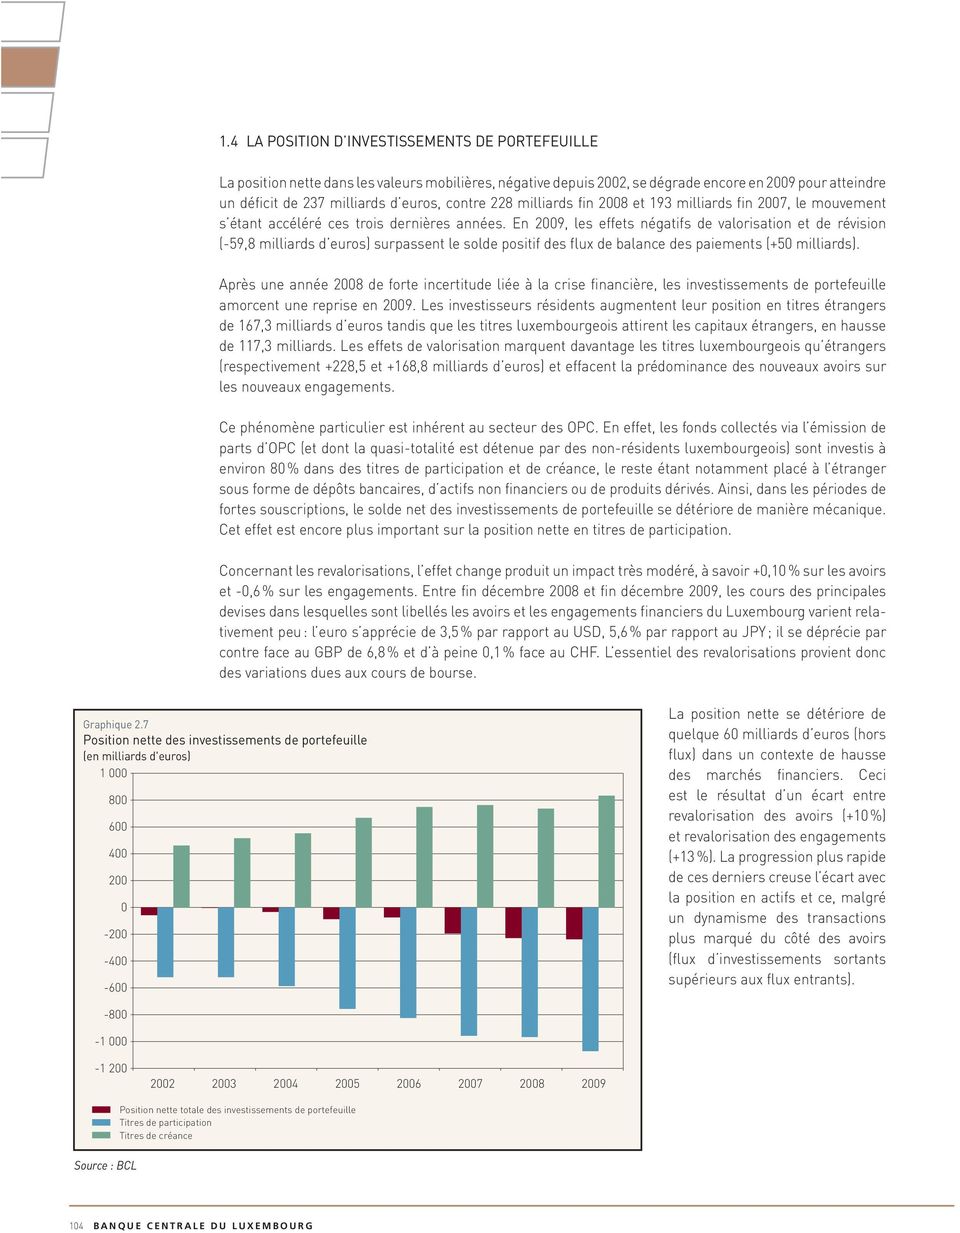 En 29, les effets négatifs de valorisation et de révision (-59,8 milliards d euros) surpassent le solde positif des flux de balance des paiements (+5 milliards).